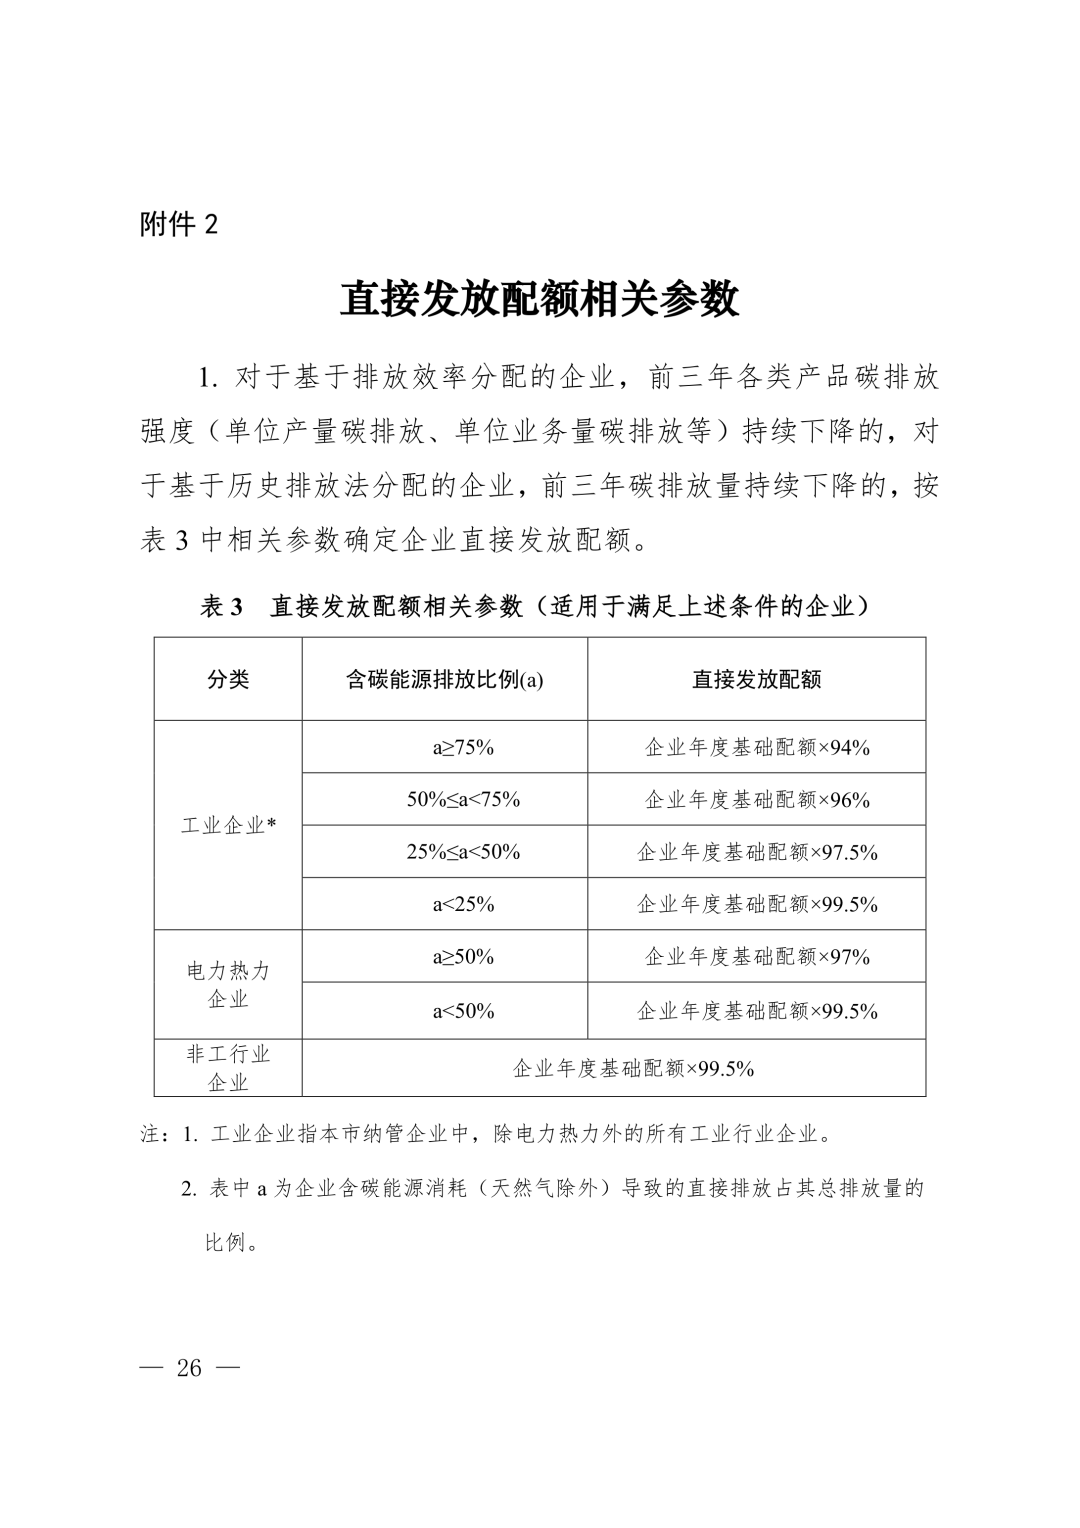 【关注】上海市生态环境局关于印发《上海市纳入碳排放配额管理单位名单（2019版）》及《上海市2019年碳排放配额分配方案》的通知(图26)